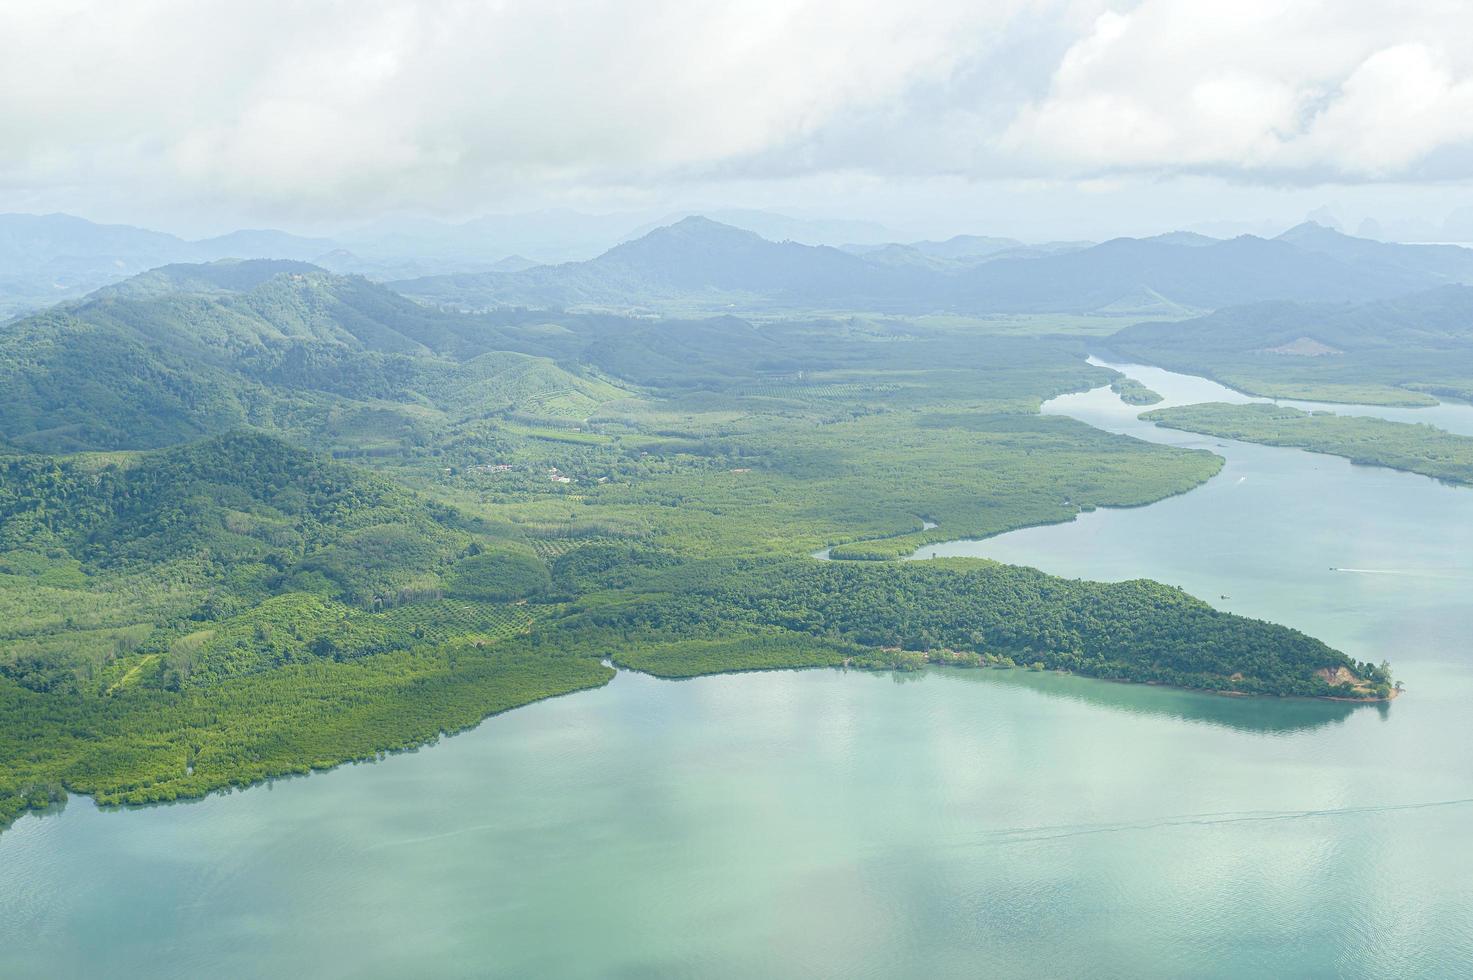 photo de vue aérienne d'un avion d'une île tropicale et d'un océan clair turquoise.